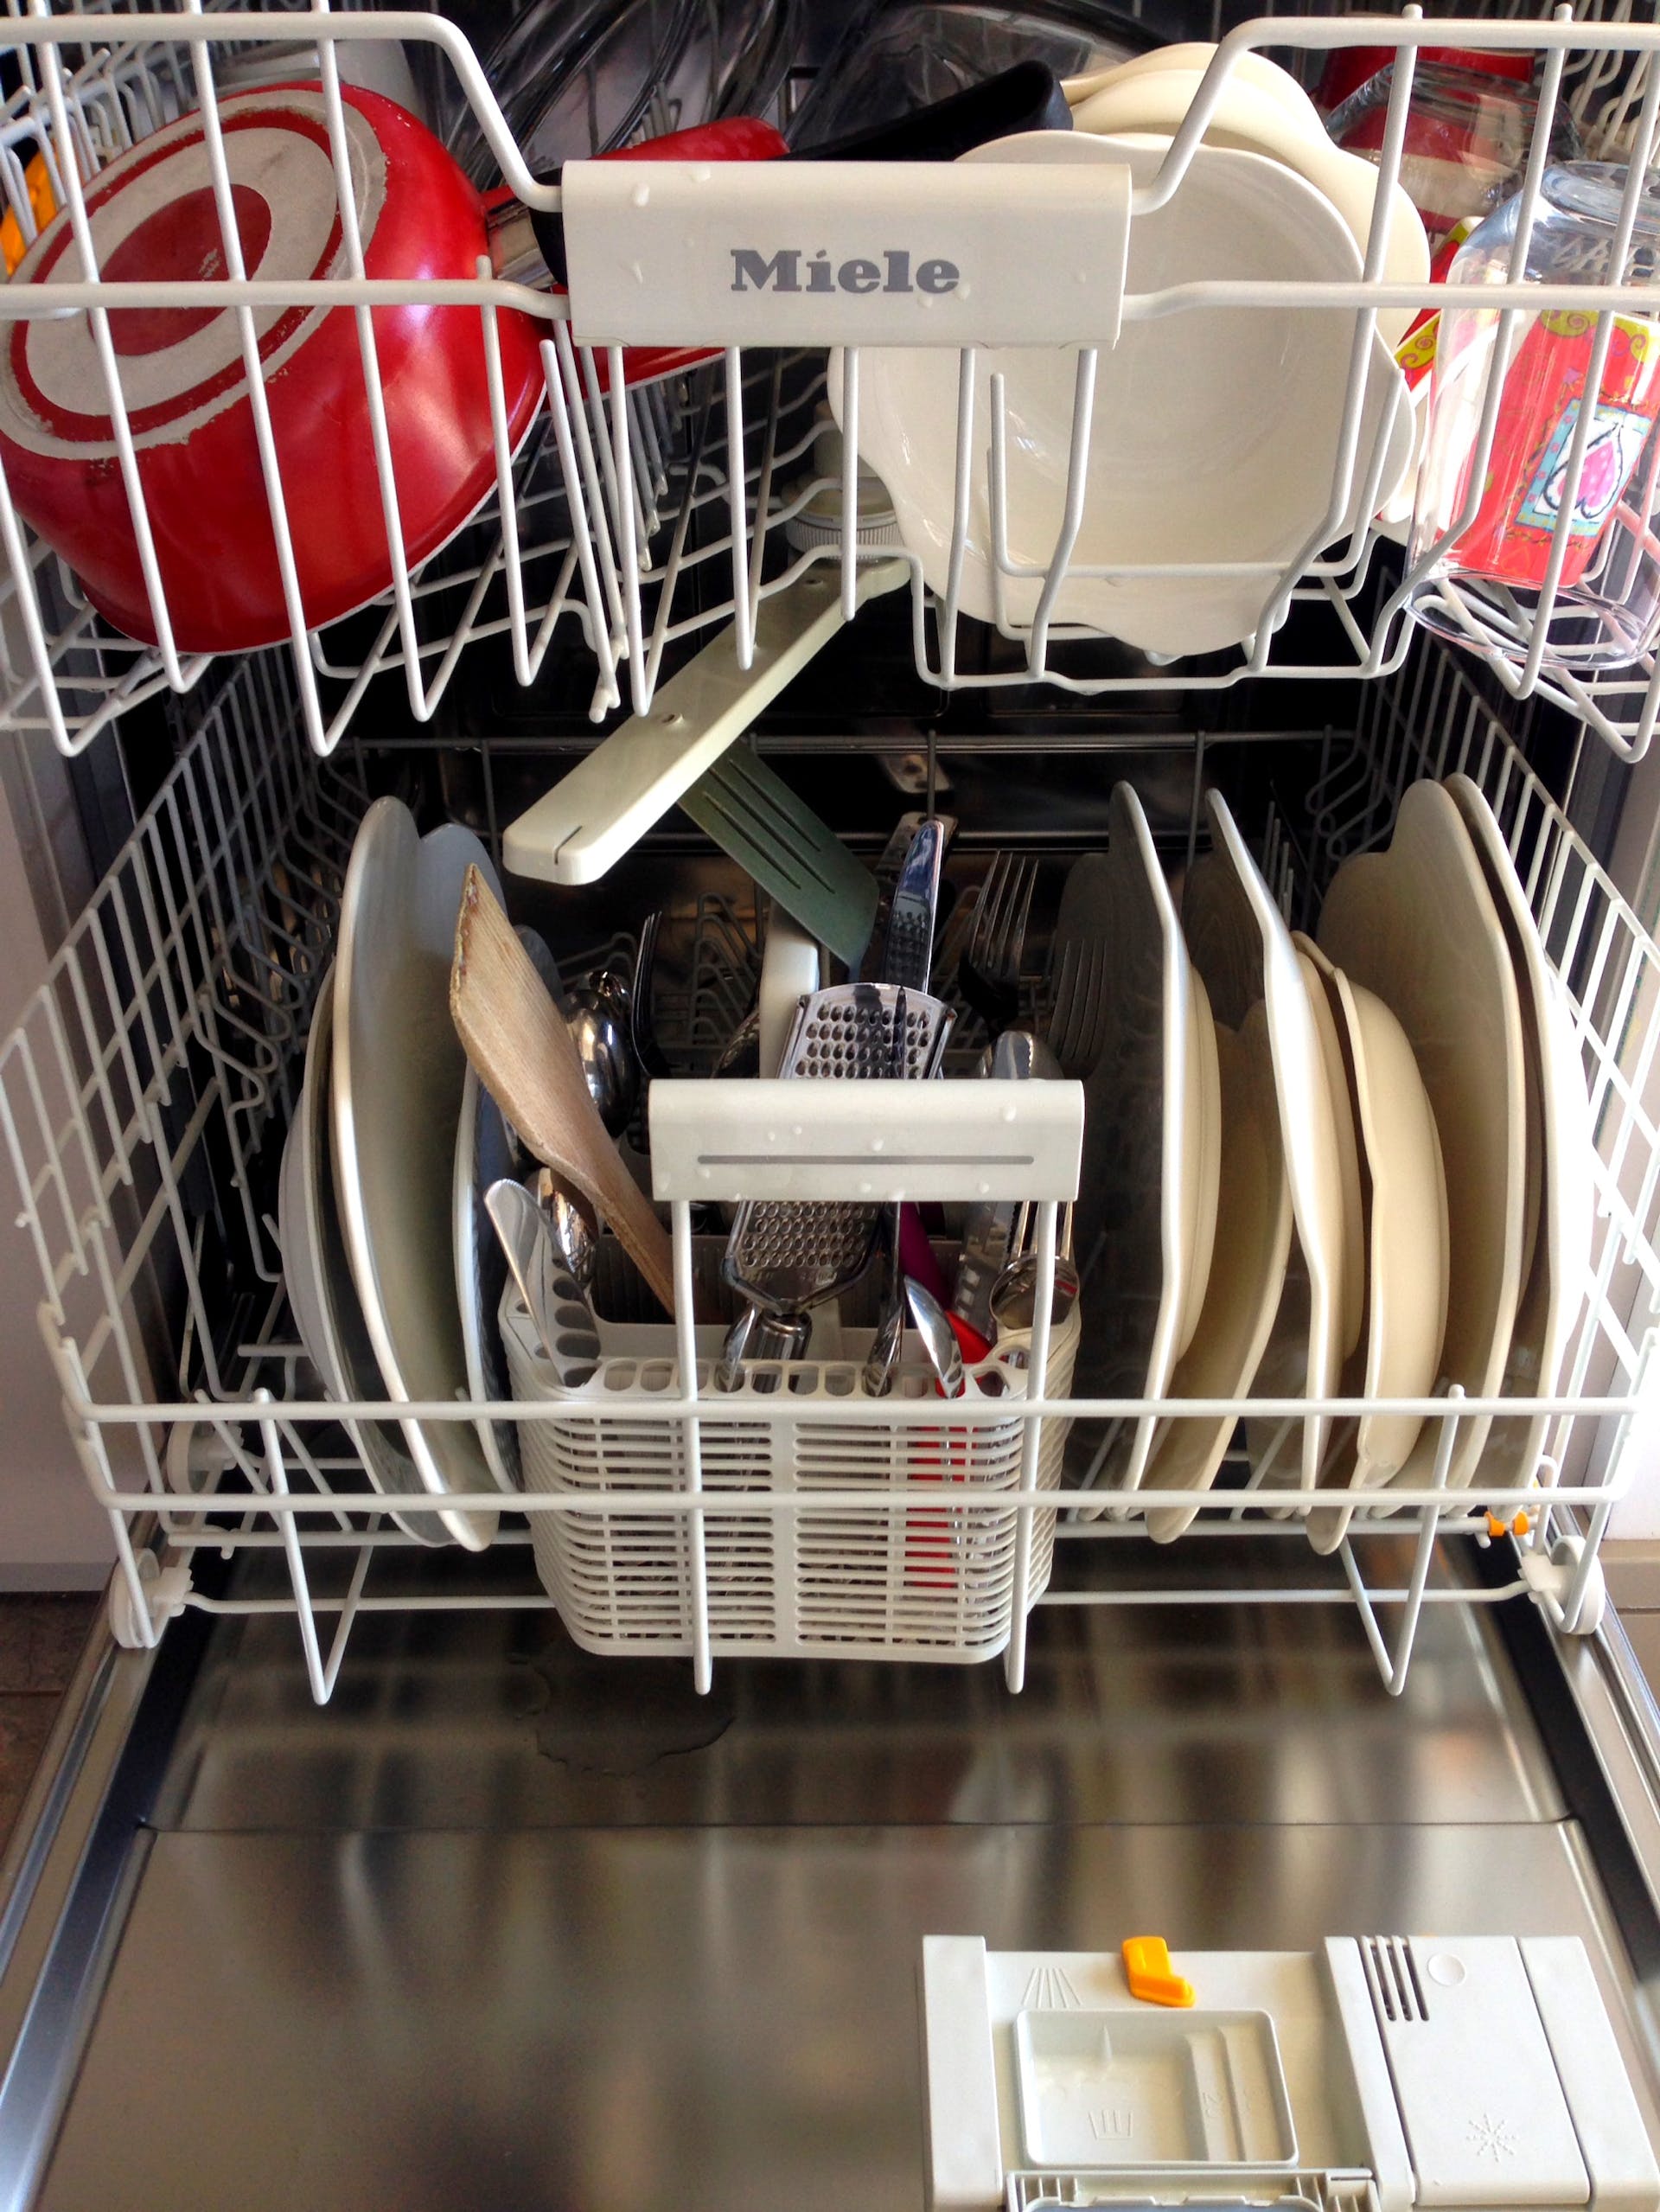 Lave-vaisselle chargé | Source : Pexels